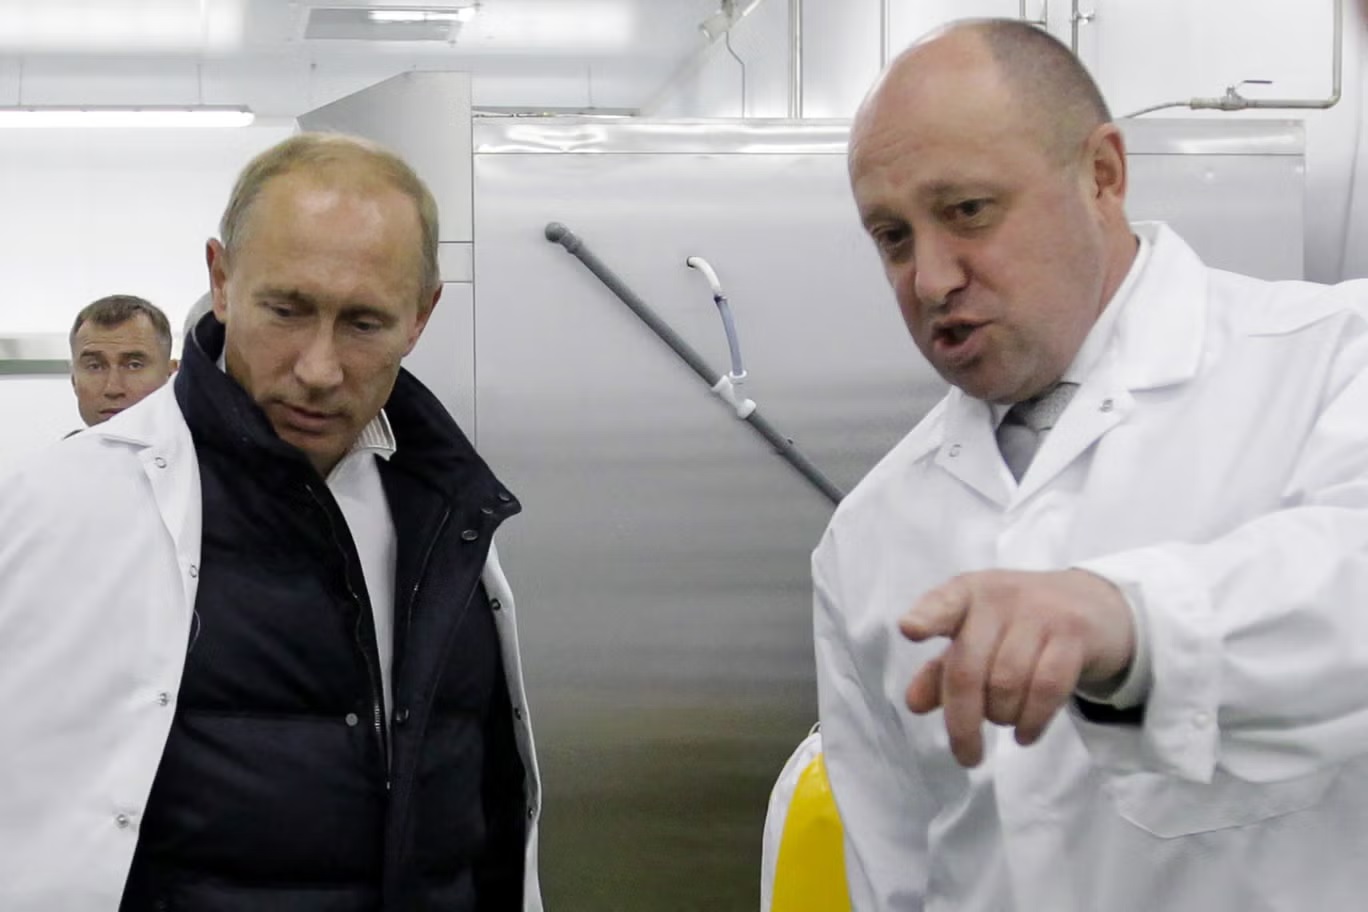 رجل الأعمال يفغيني بريغوجين يطلع رئيس الوزراء الروسي فلاديمير بوتين على مصنع الغداء المدرسي في ضواحي سانت بطرسبورغ في 20 سبتمبر 2010 (سبوتنيك/ أ ف ب عبر غيتي)